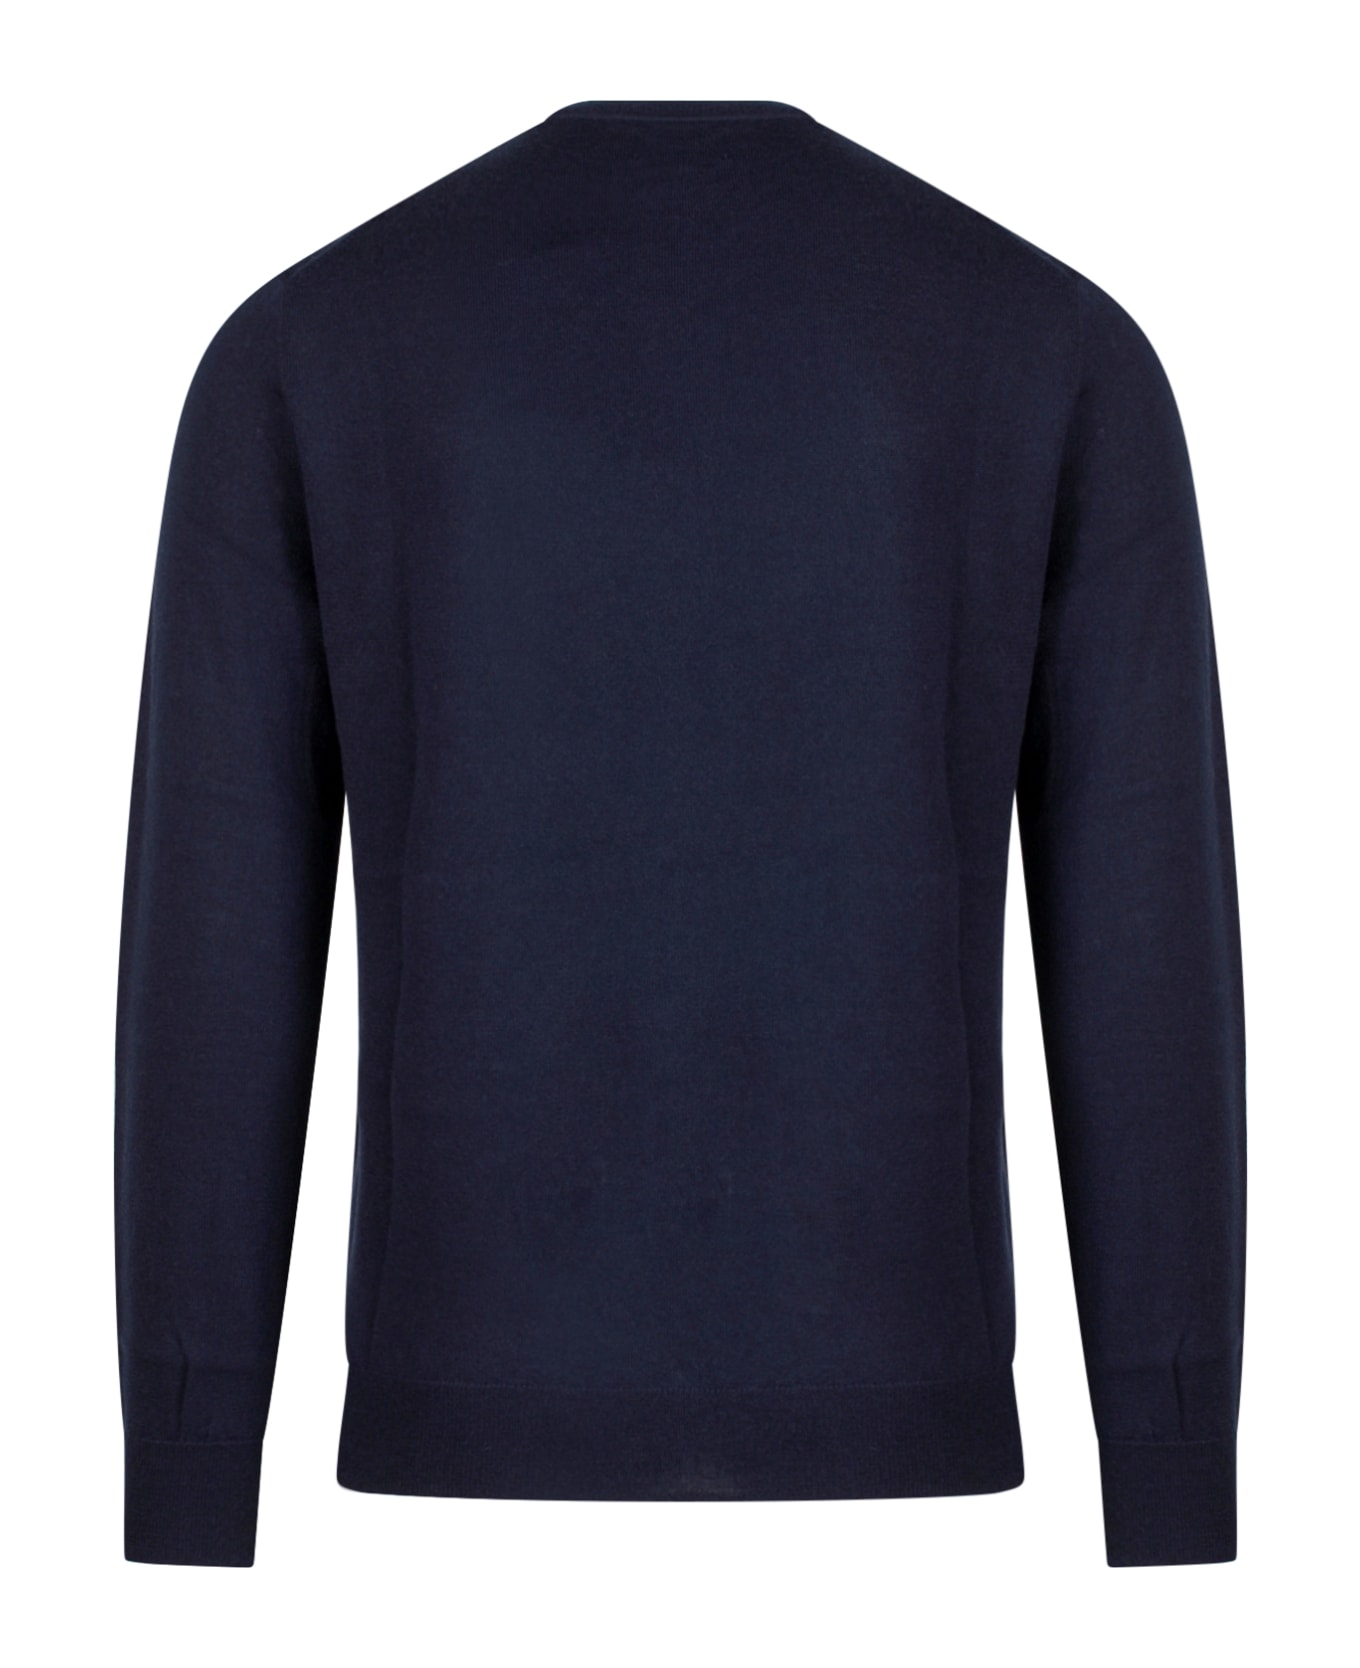 Ralph Lauren Sweater - Blue ニットウェア